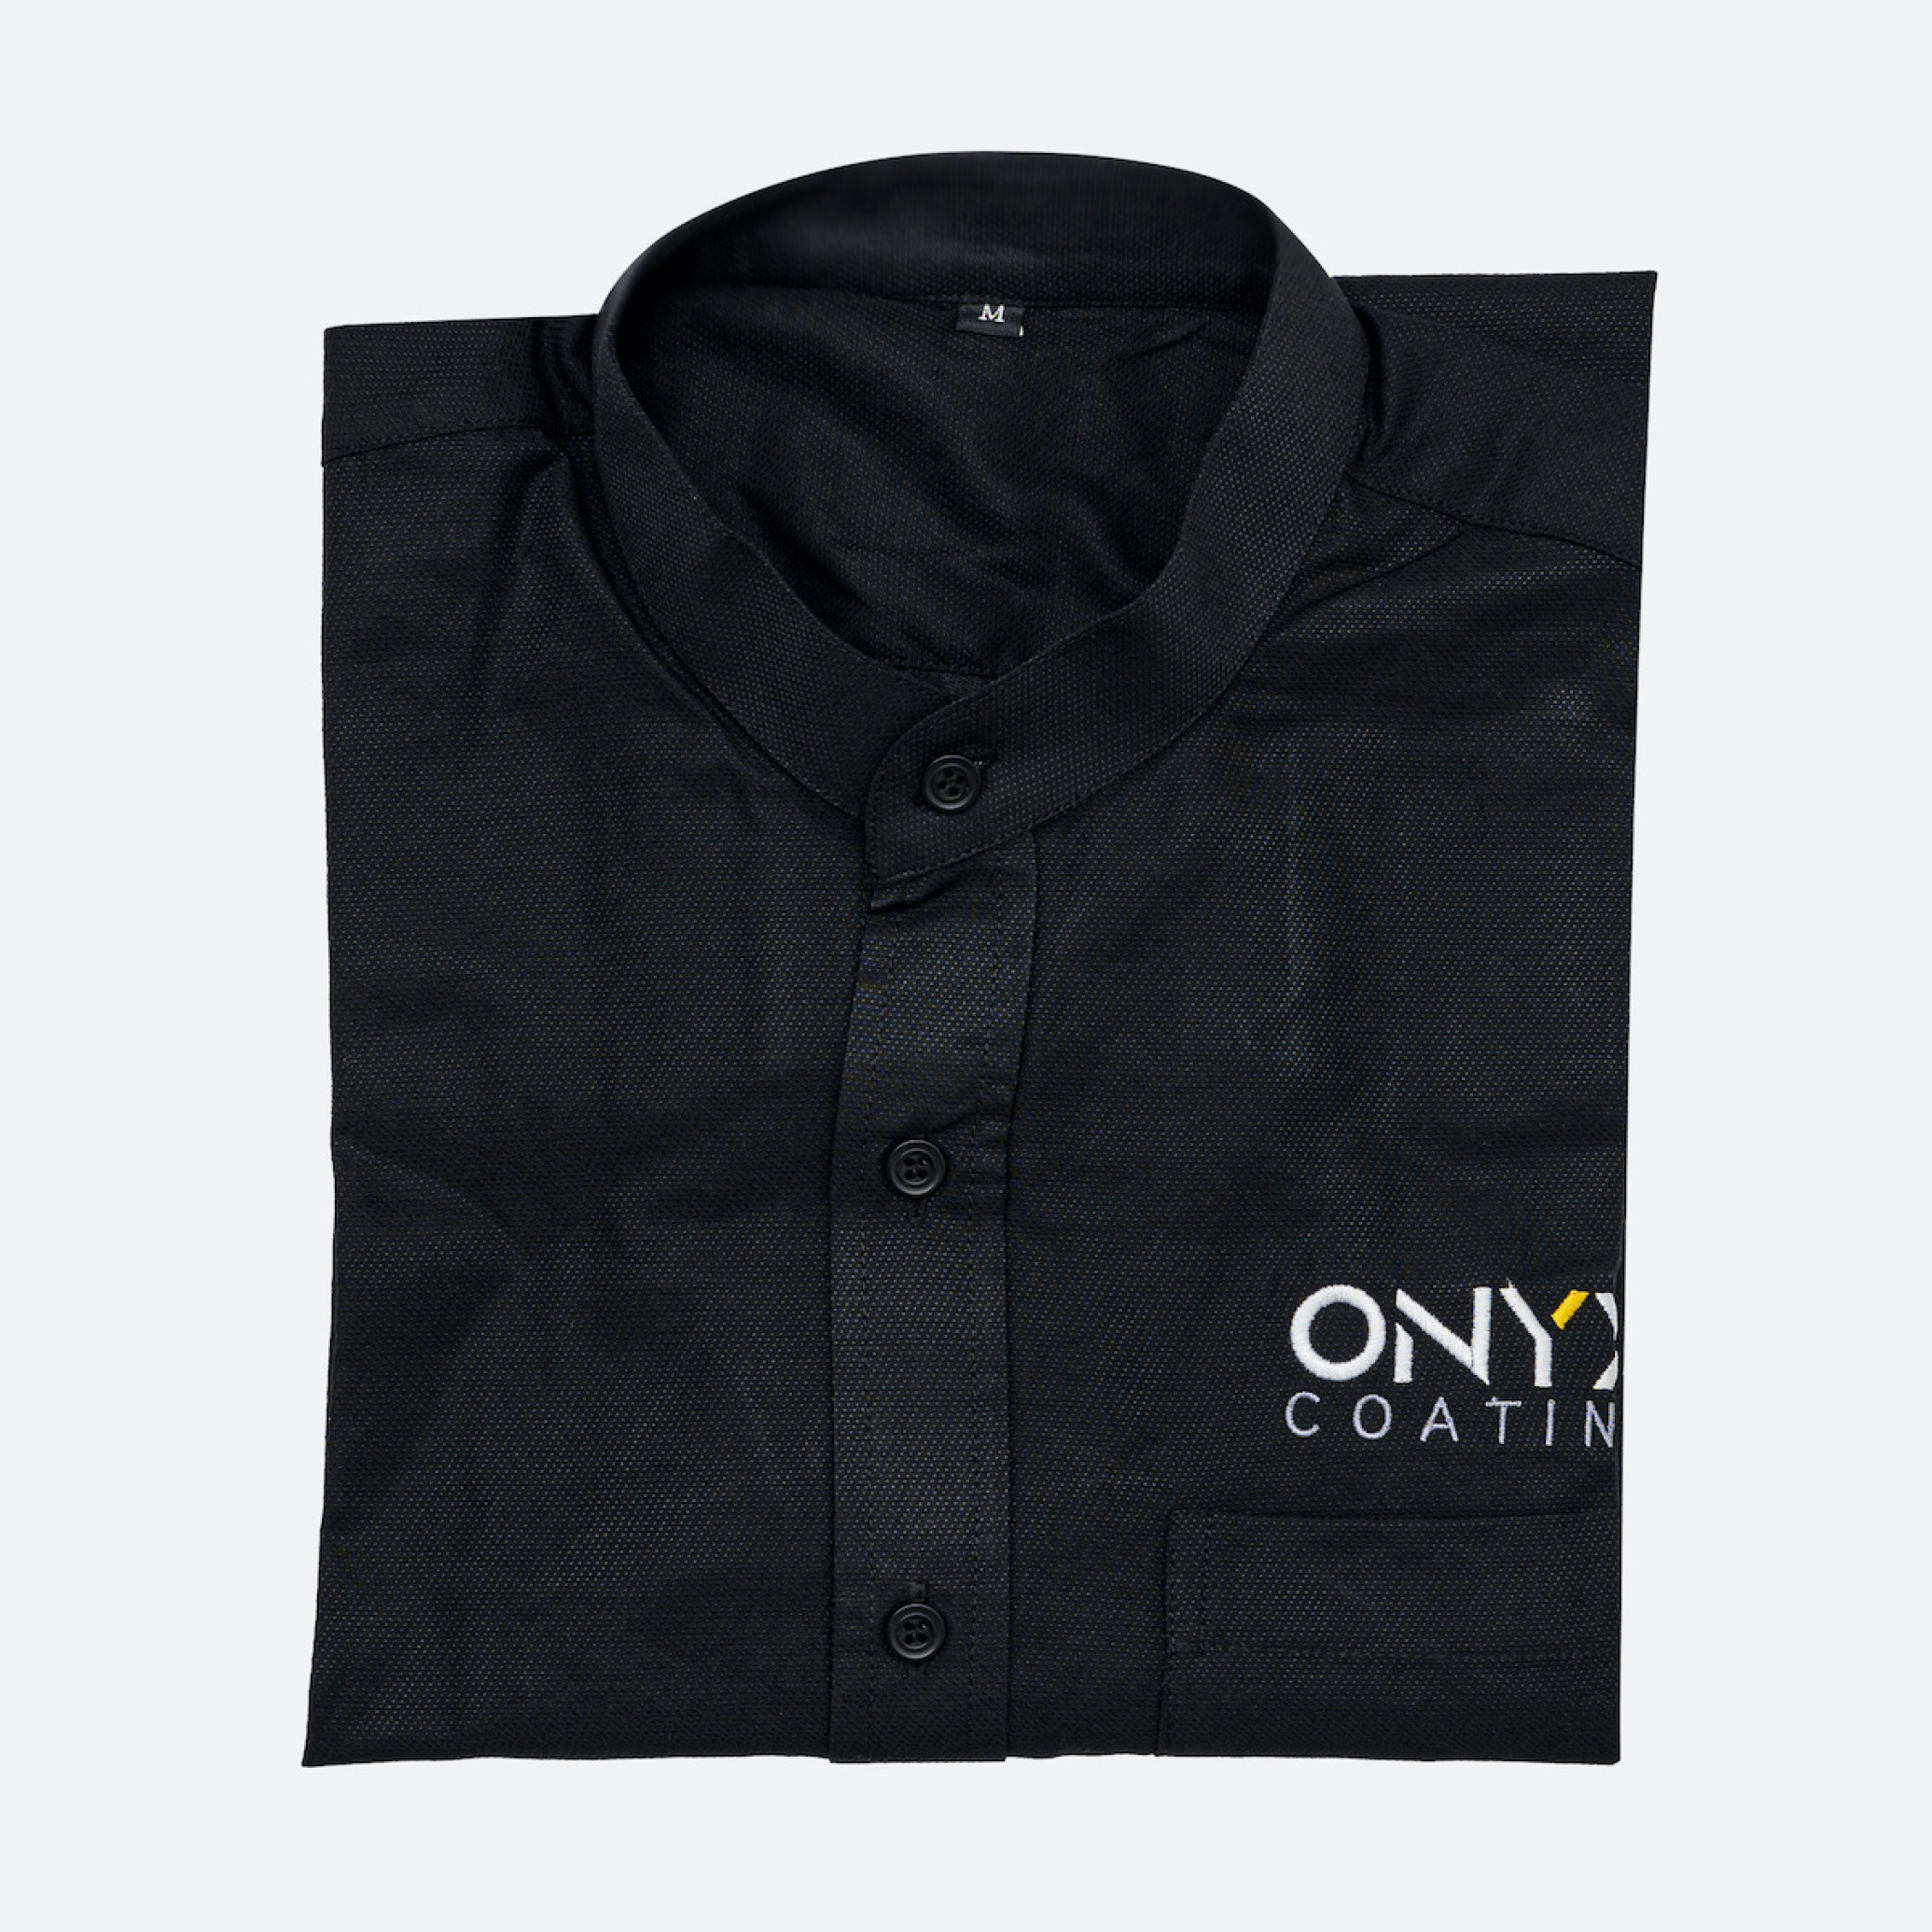  Onyx Coating Shirt 